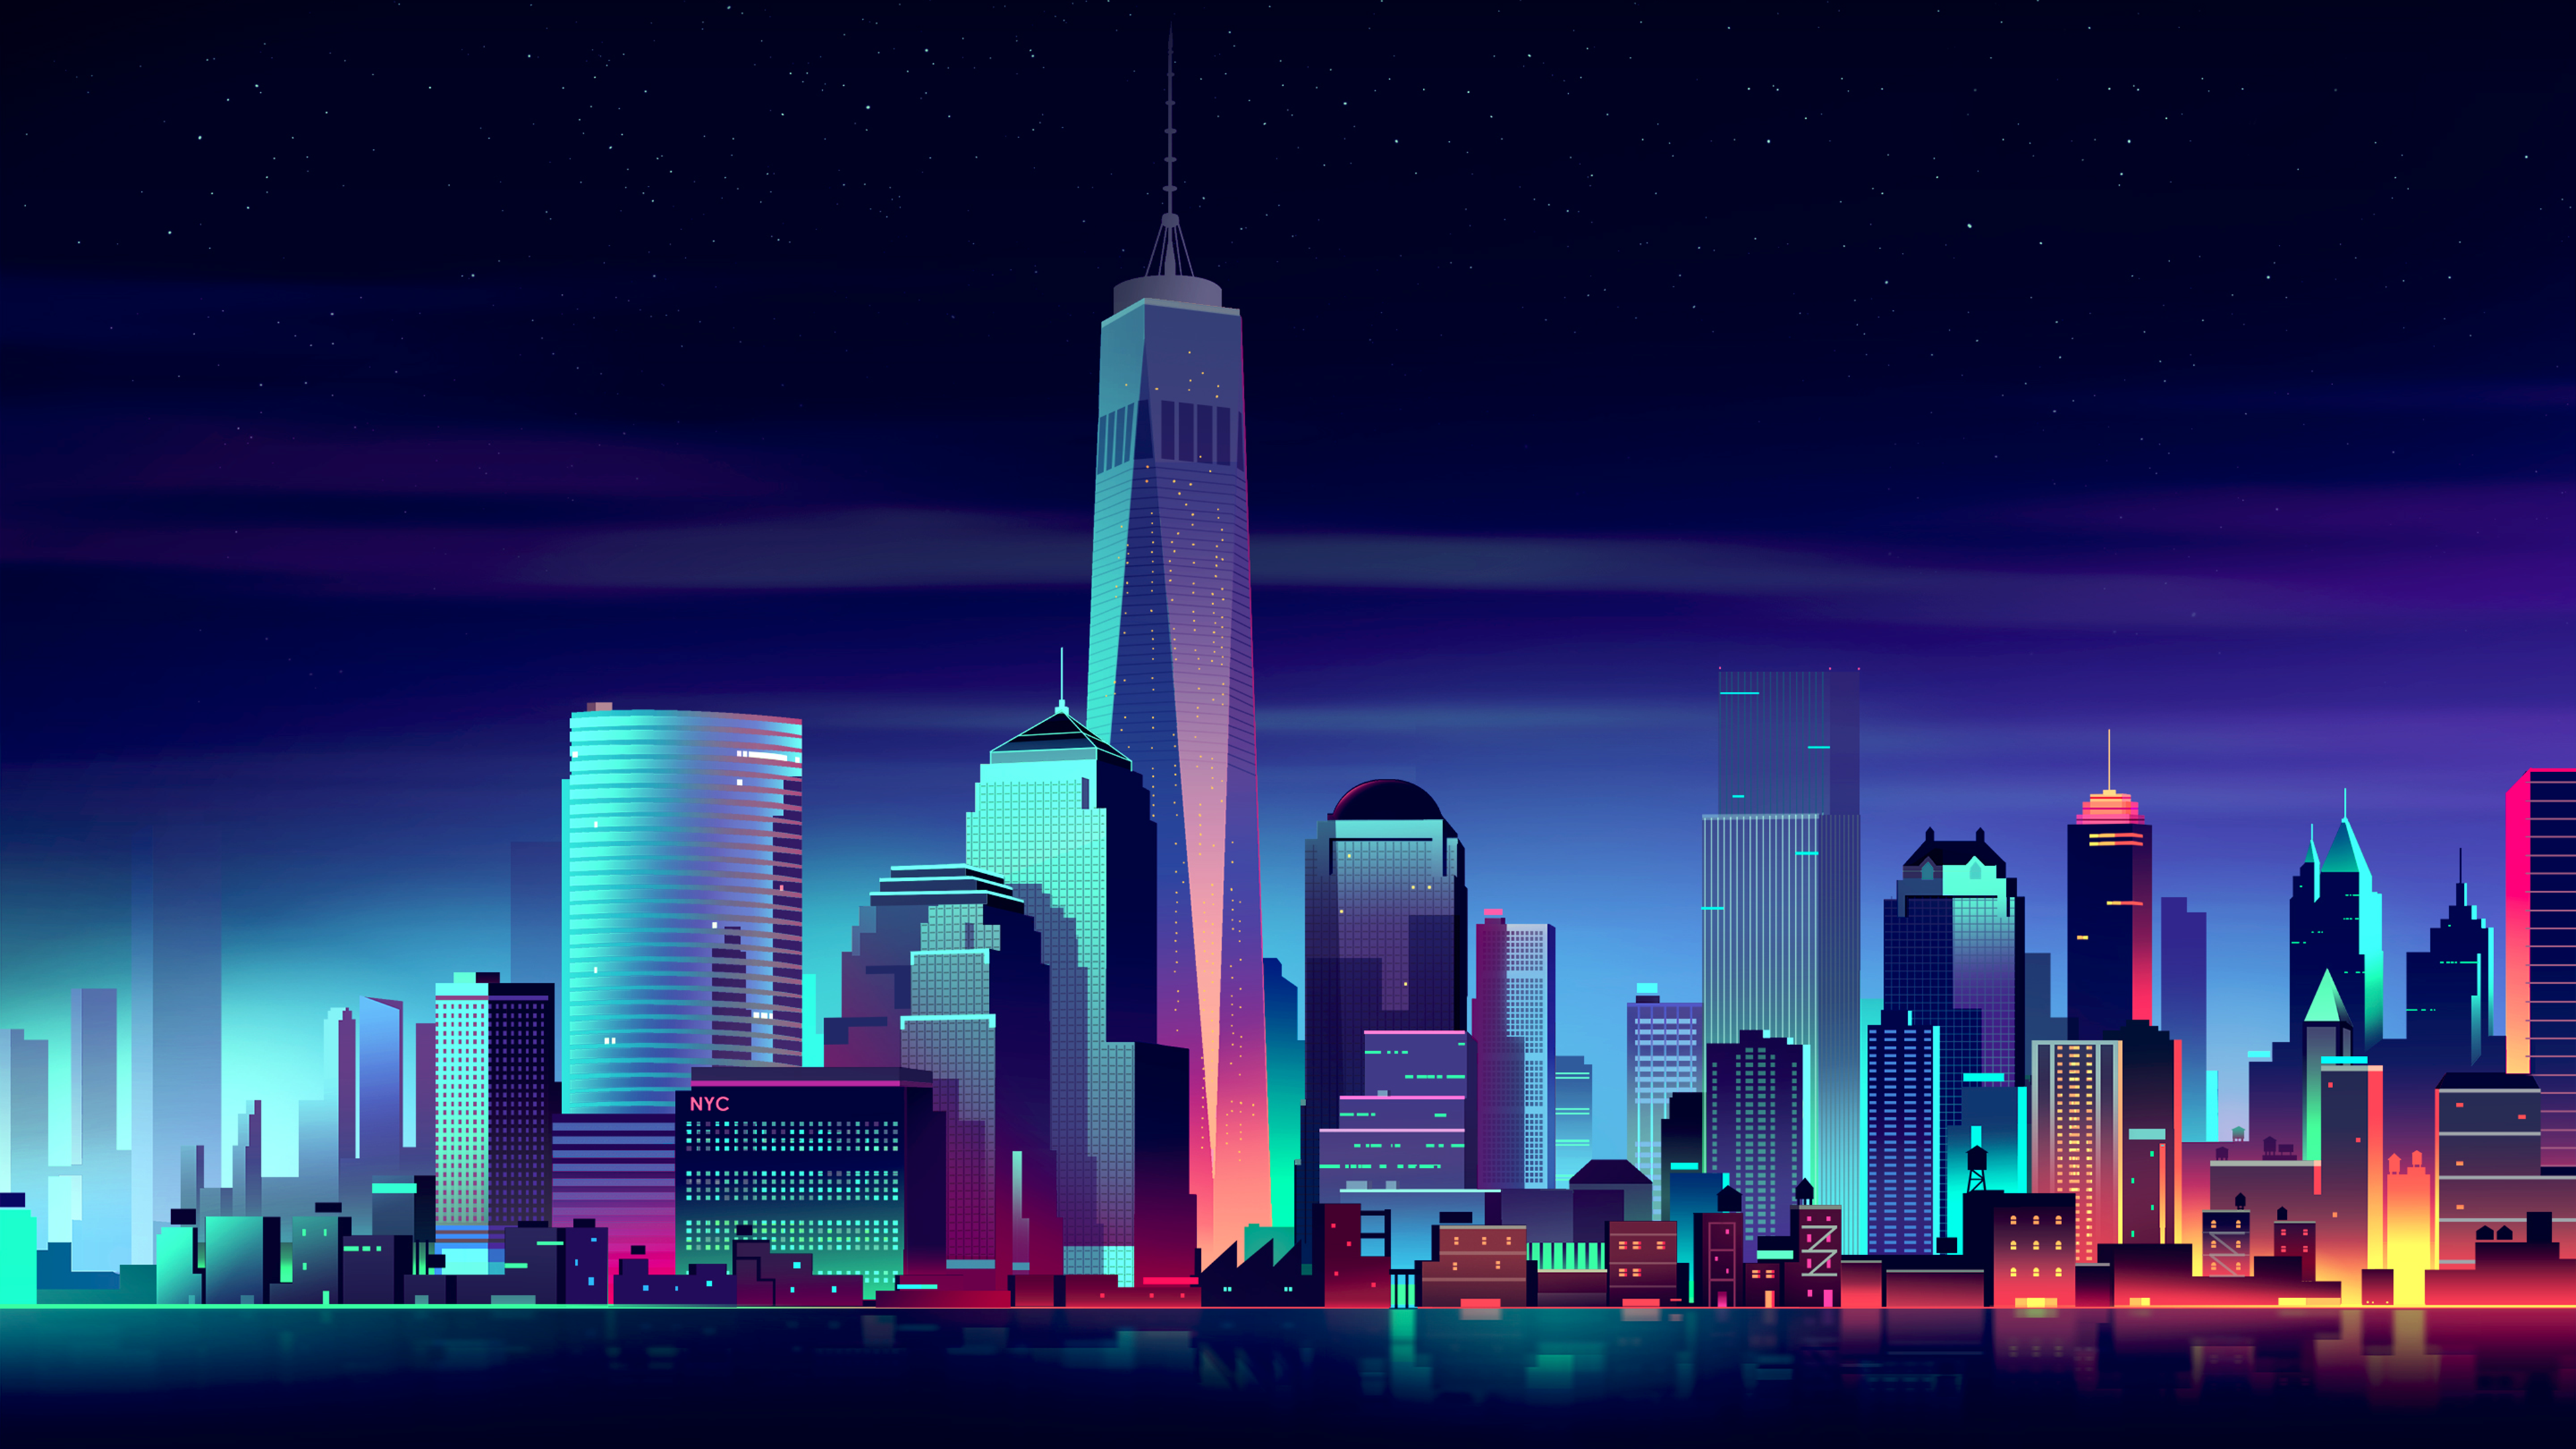 Thành phố với những đèn neon sặc sỡ là một khung cảnh đẹp đến ngỡ ngàng. Bộ sưu tập hình nền Neon City Computer Wallpapers HD sẽ đưa bạn đến với những đường phố đầy màu sắc, những góc phố tuyệt đẹp bậc nhất. Tải ngay để tận hưởng cảm giác như đang sống trong một thành phố đầy màu sắc.